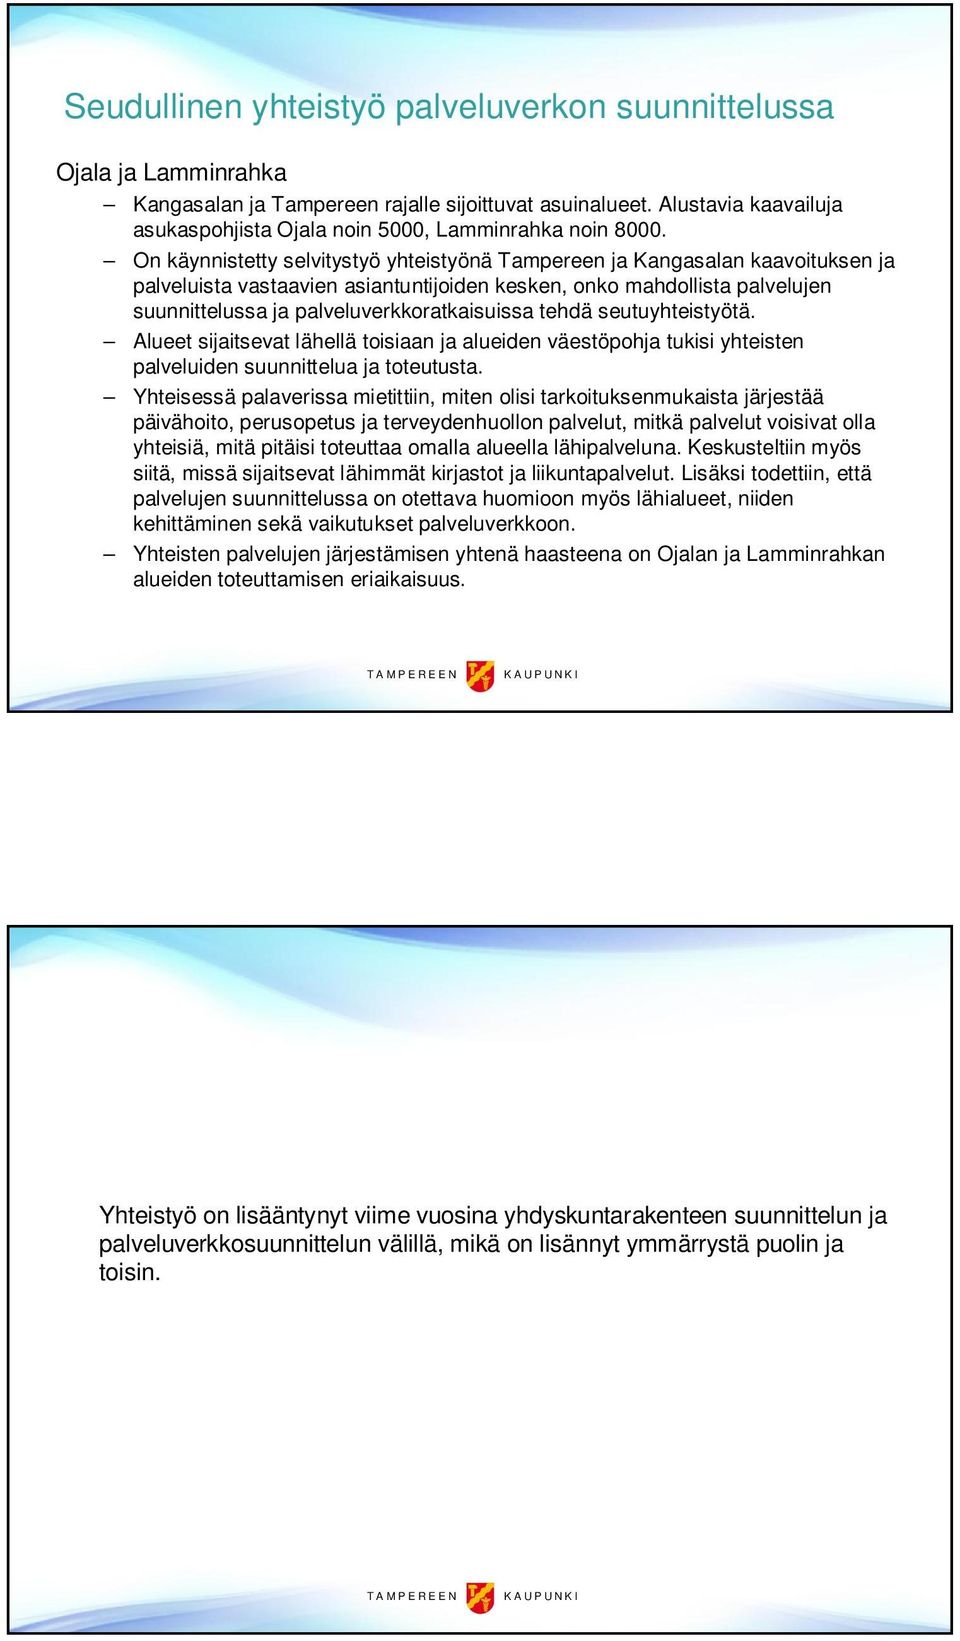 On käynnistetty selvitystyö yhteistyönä Tampereen ja Kangasalan kaavoituksen ja palveluista vastaavien asiantuntijoiden kesken, onko mahdollista palvelujen suunnittelussa ja palveluverkkoratkaisuissa